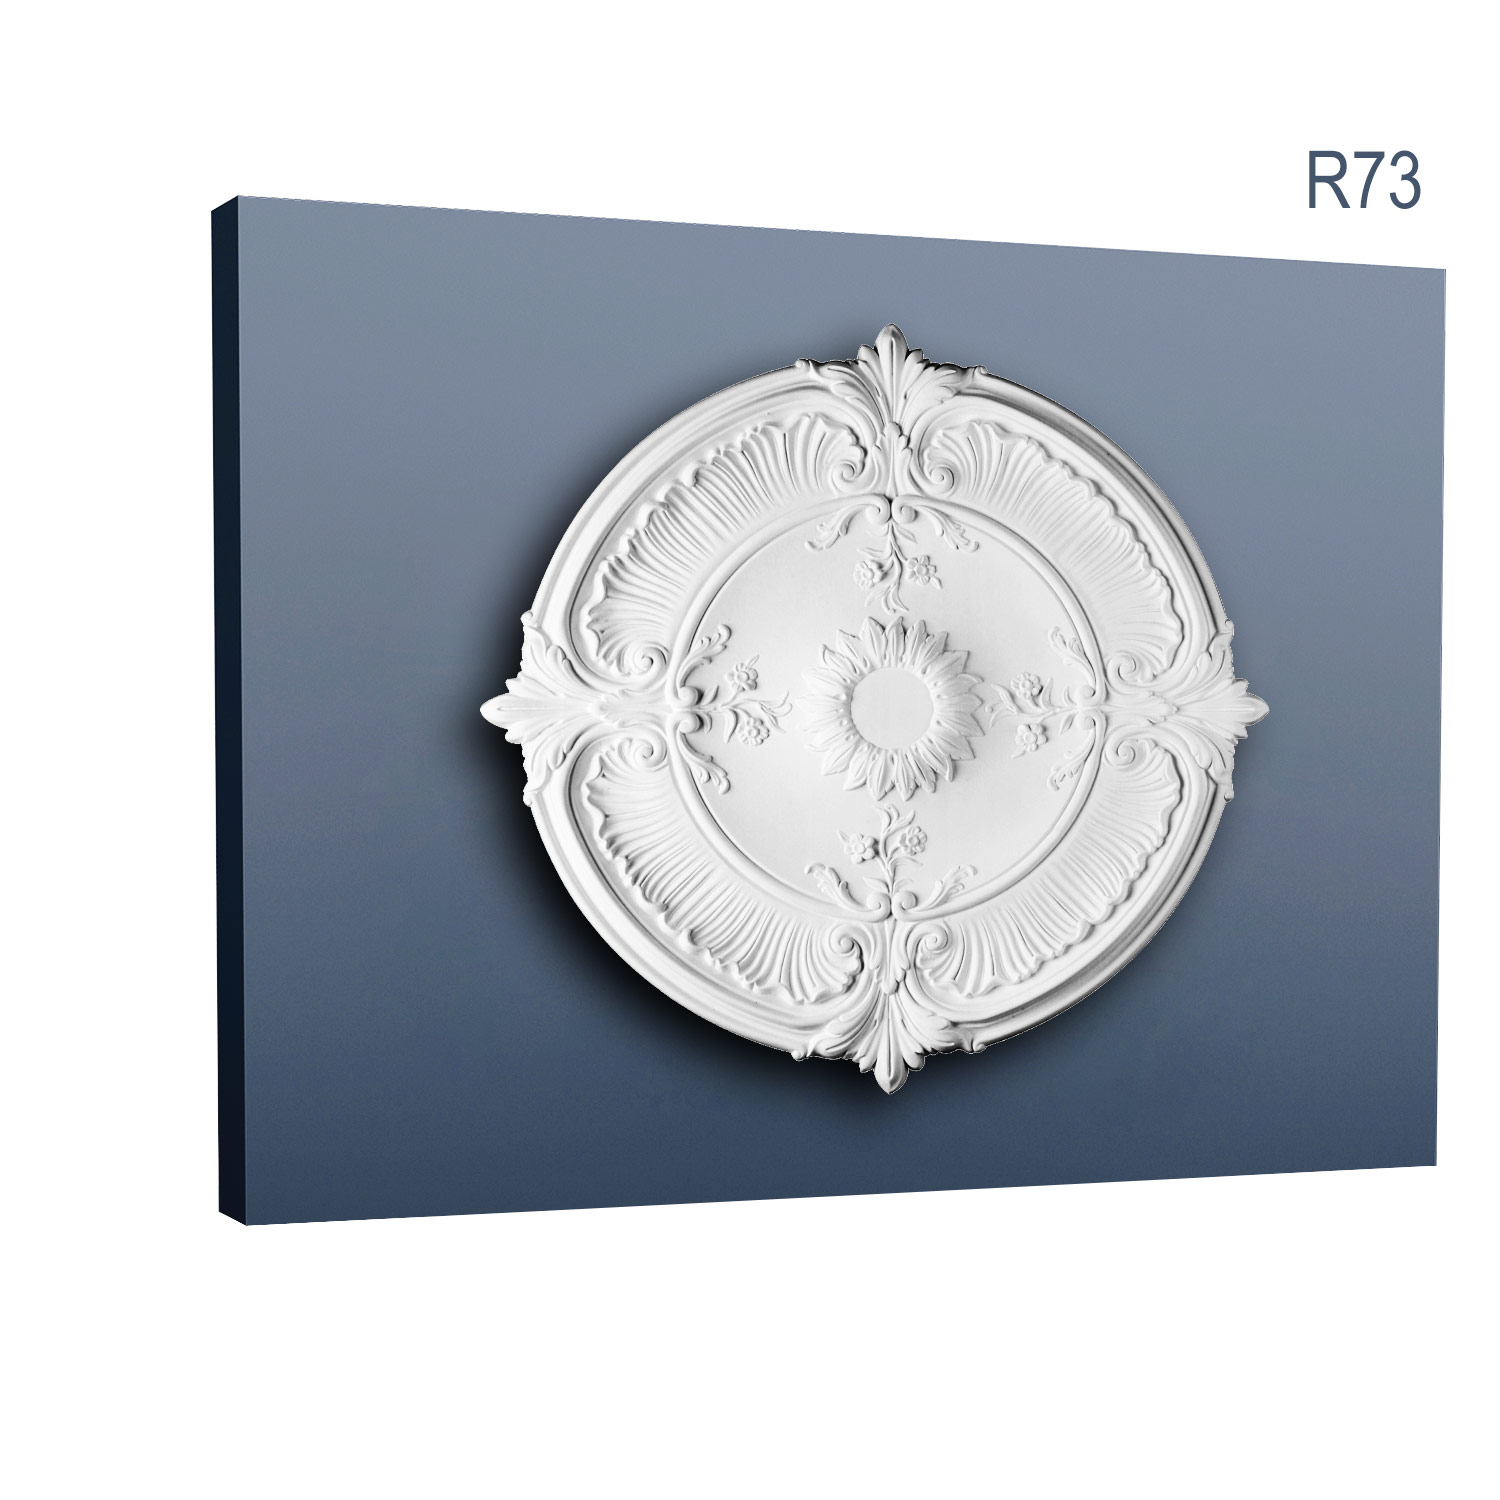 Rozeta Luxxus R73, Dimensiuni: diam. 70 cm (H: 5,9 cm), Orac Decor Orac Decor